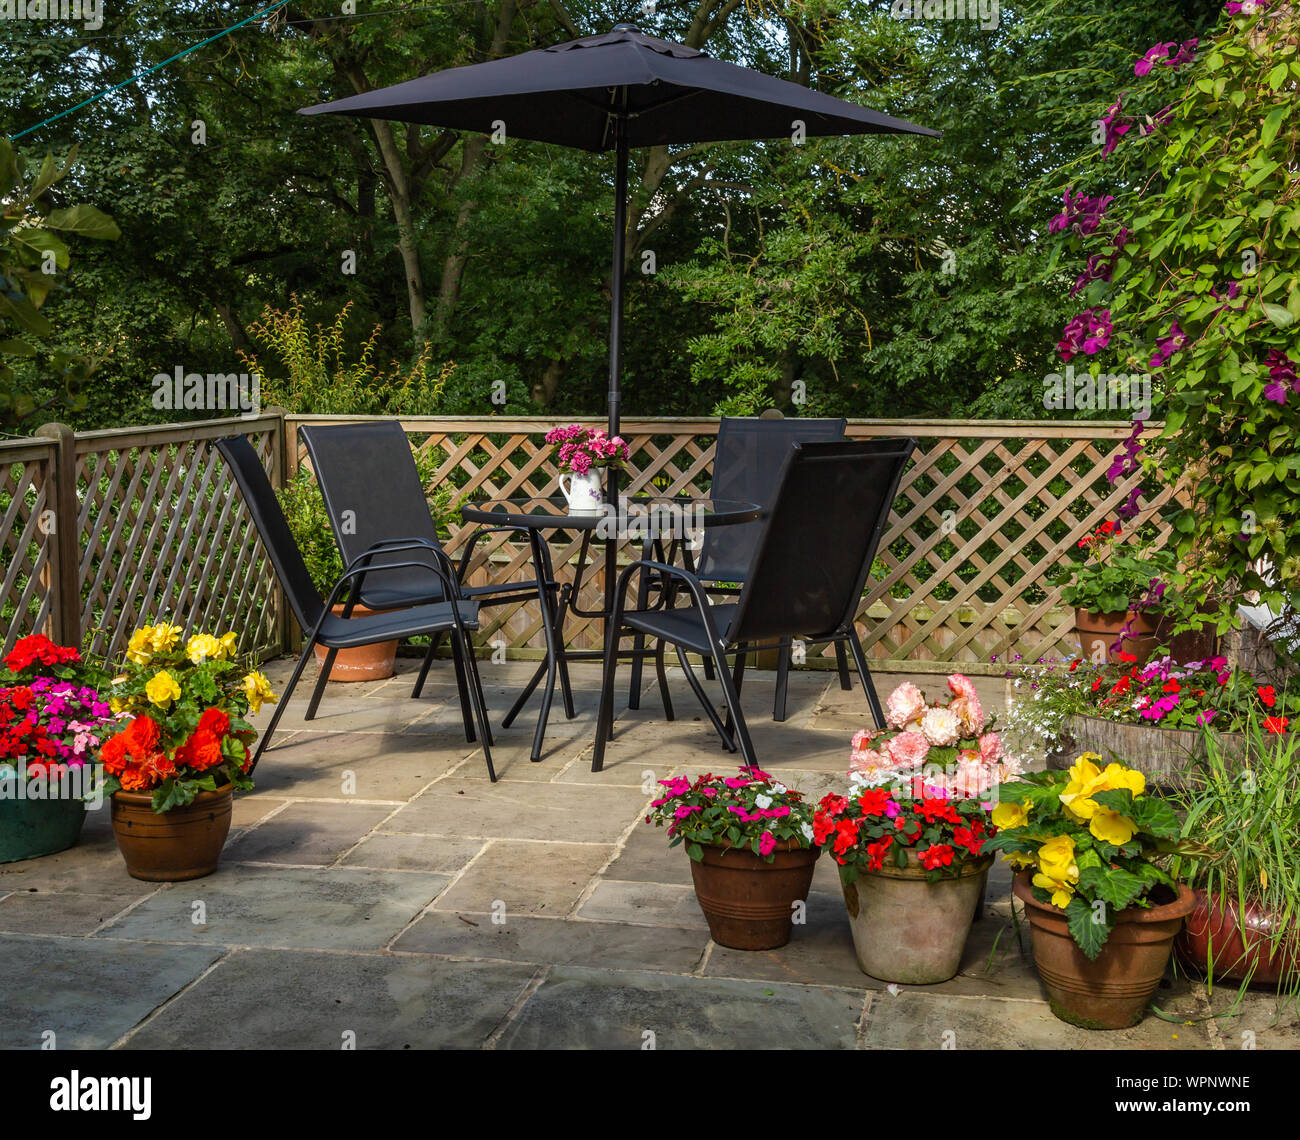 An English garden patio in summer. Stock Photo